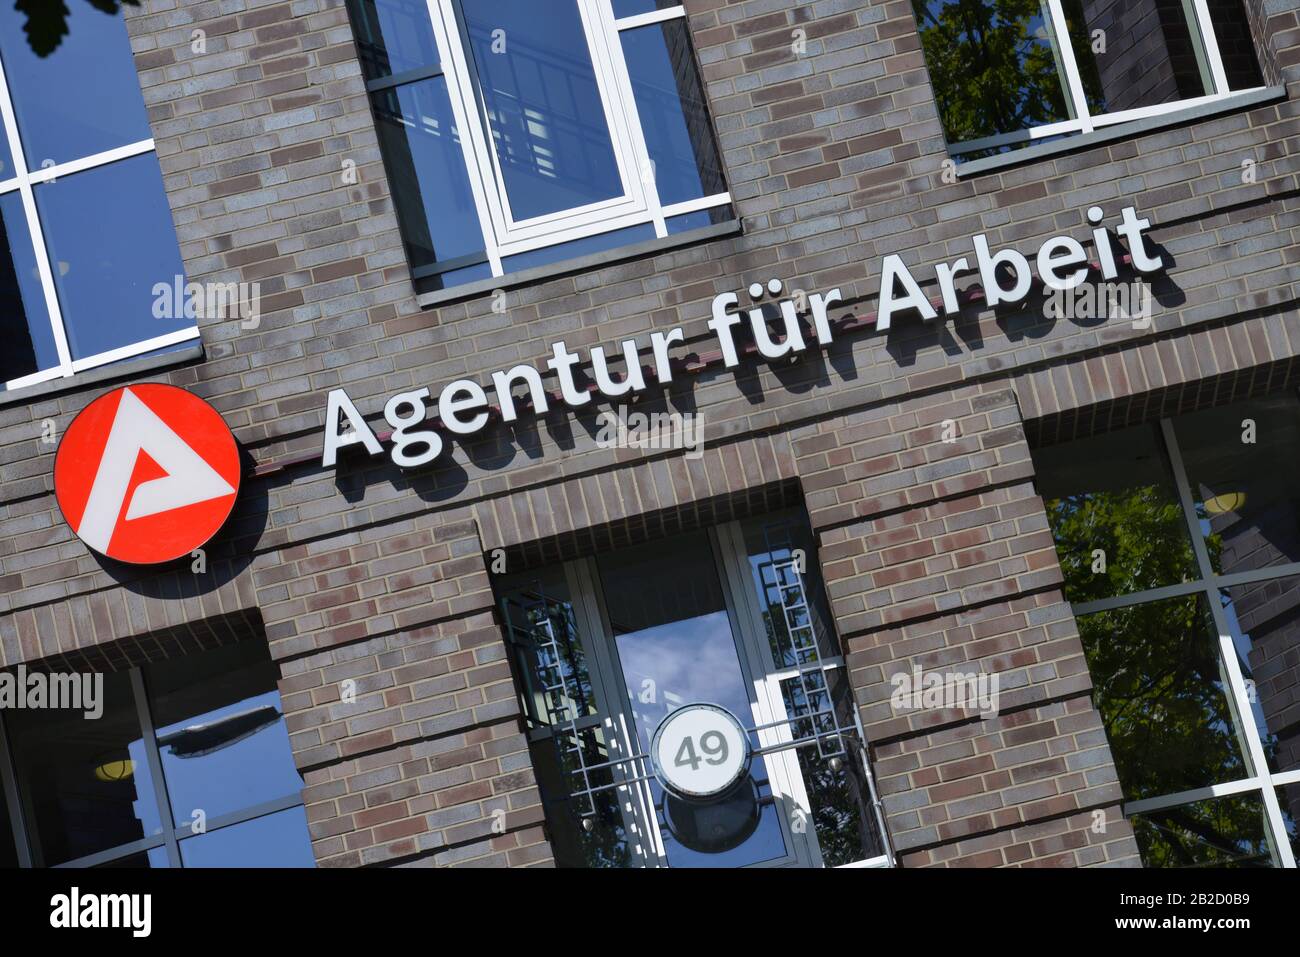 Agentur fuer Arbeit, Koenigin-Elisabeth-Strasse, Westend, Charlottenburg, Berlin, Deutschland Stock Photo